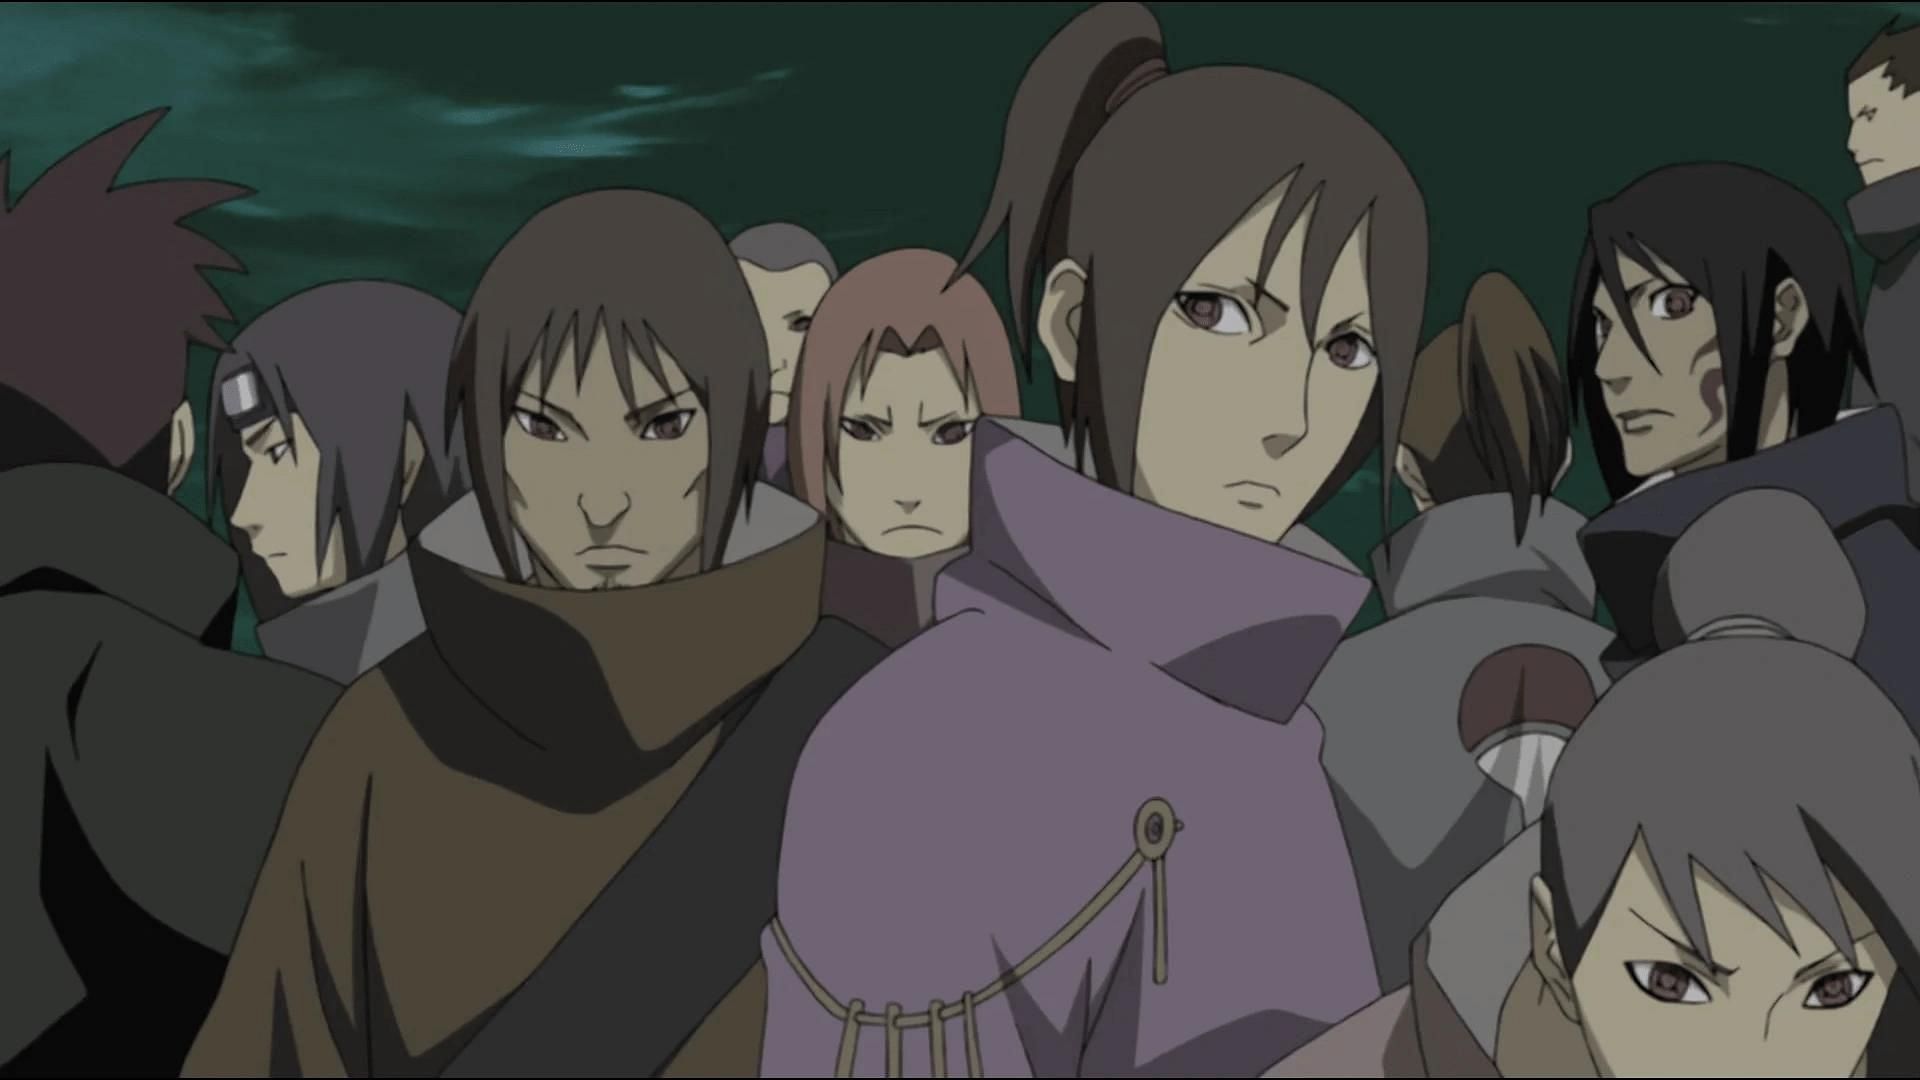 The Uchiha clan (Image via Studio Pierrot)